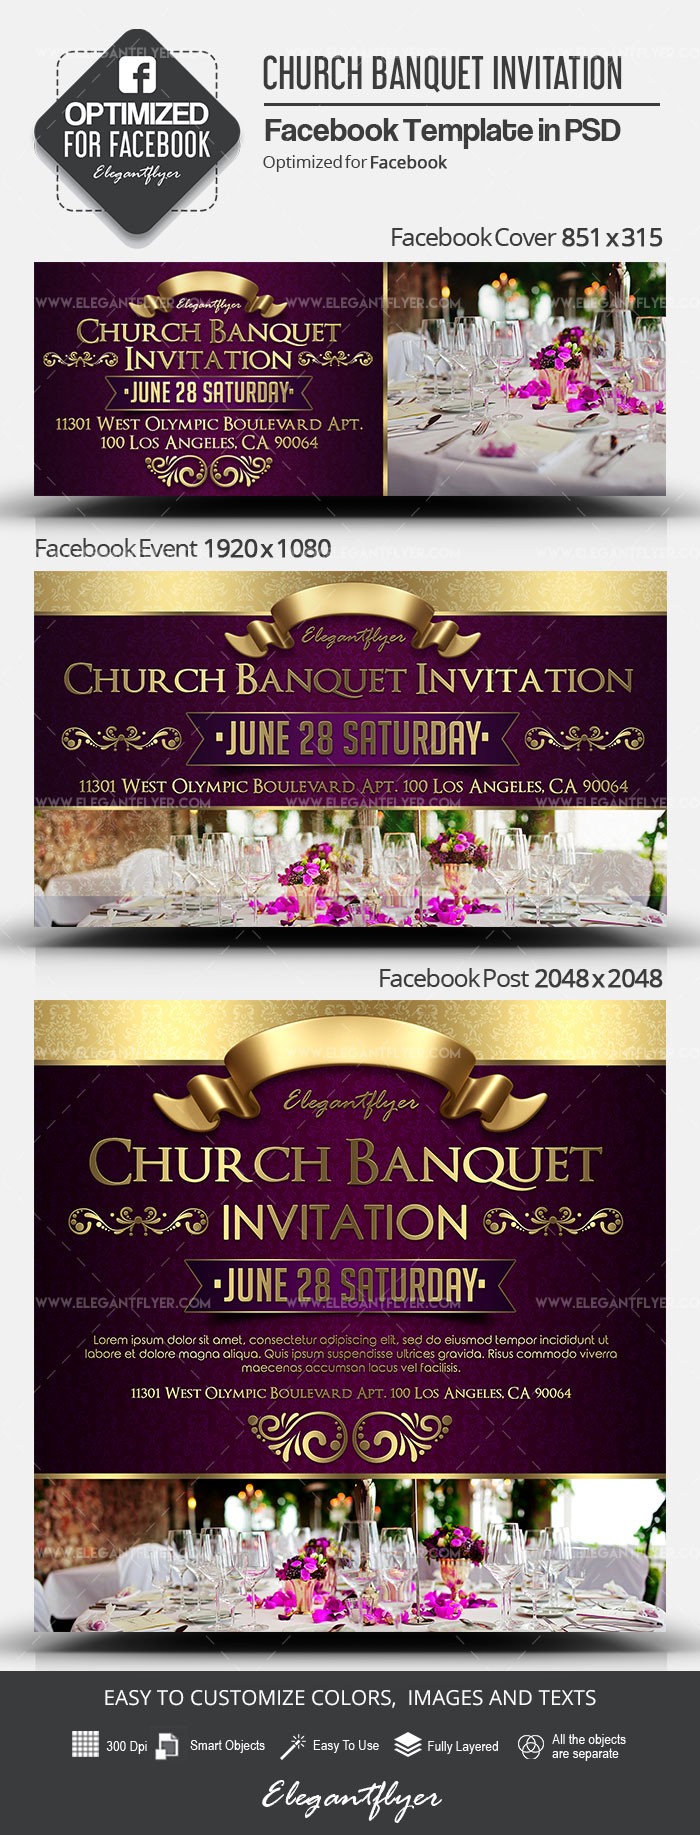 Invitación de Banquete de Iglesia en Facebook by ElegantFlyer